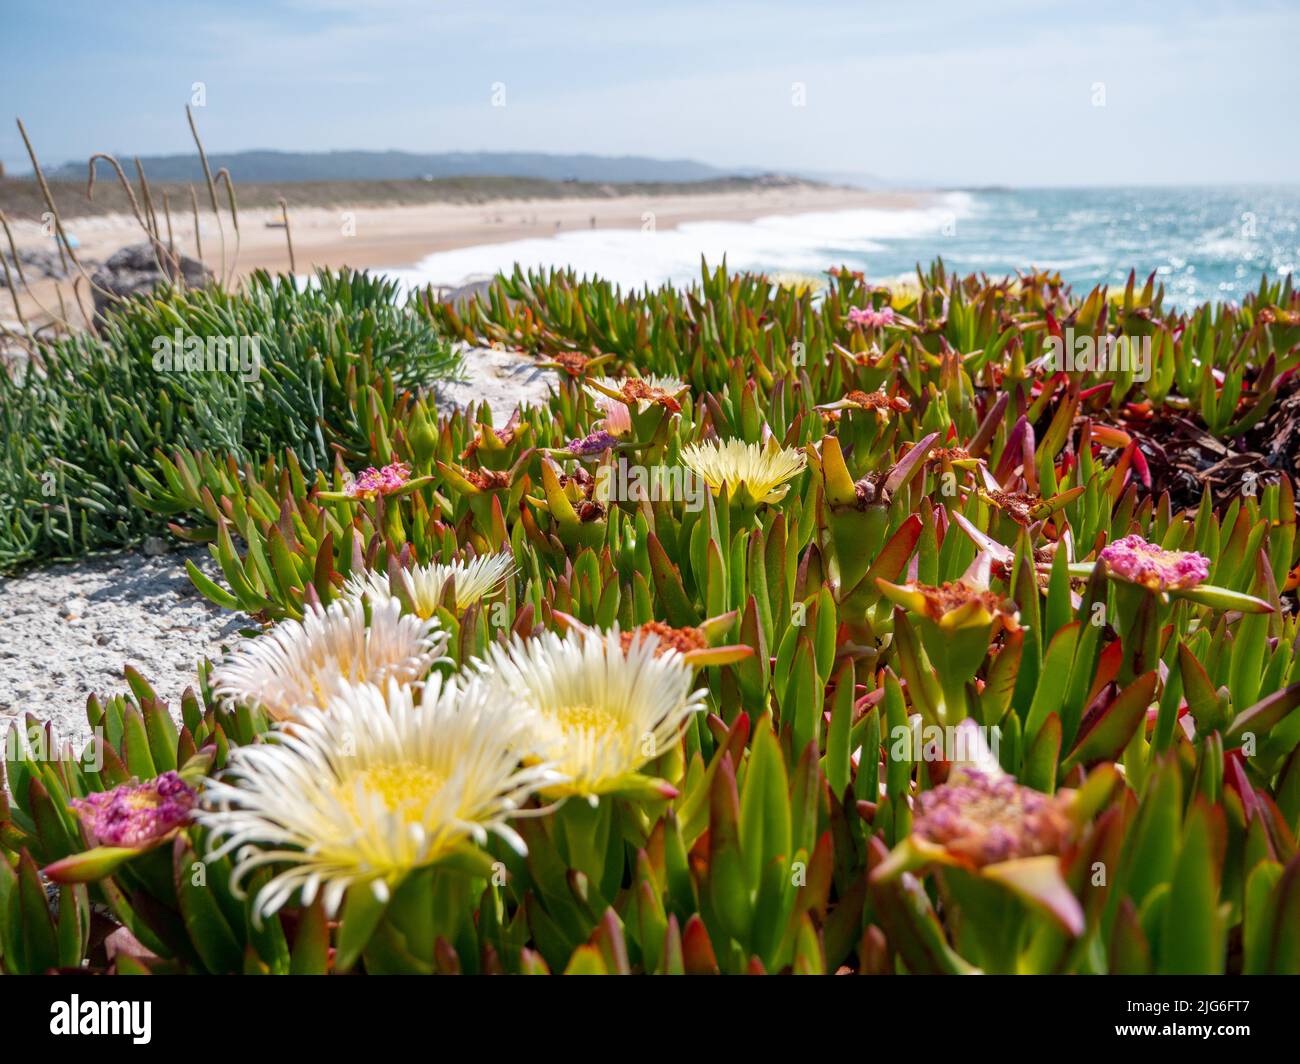 belle journée sur la plage portugaise au bord de l'océan atlantique avec fleurs de glace qui fleurissent sur les dunes Banque D'Images